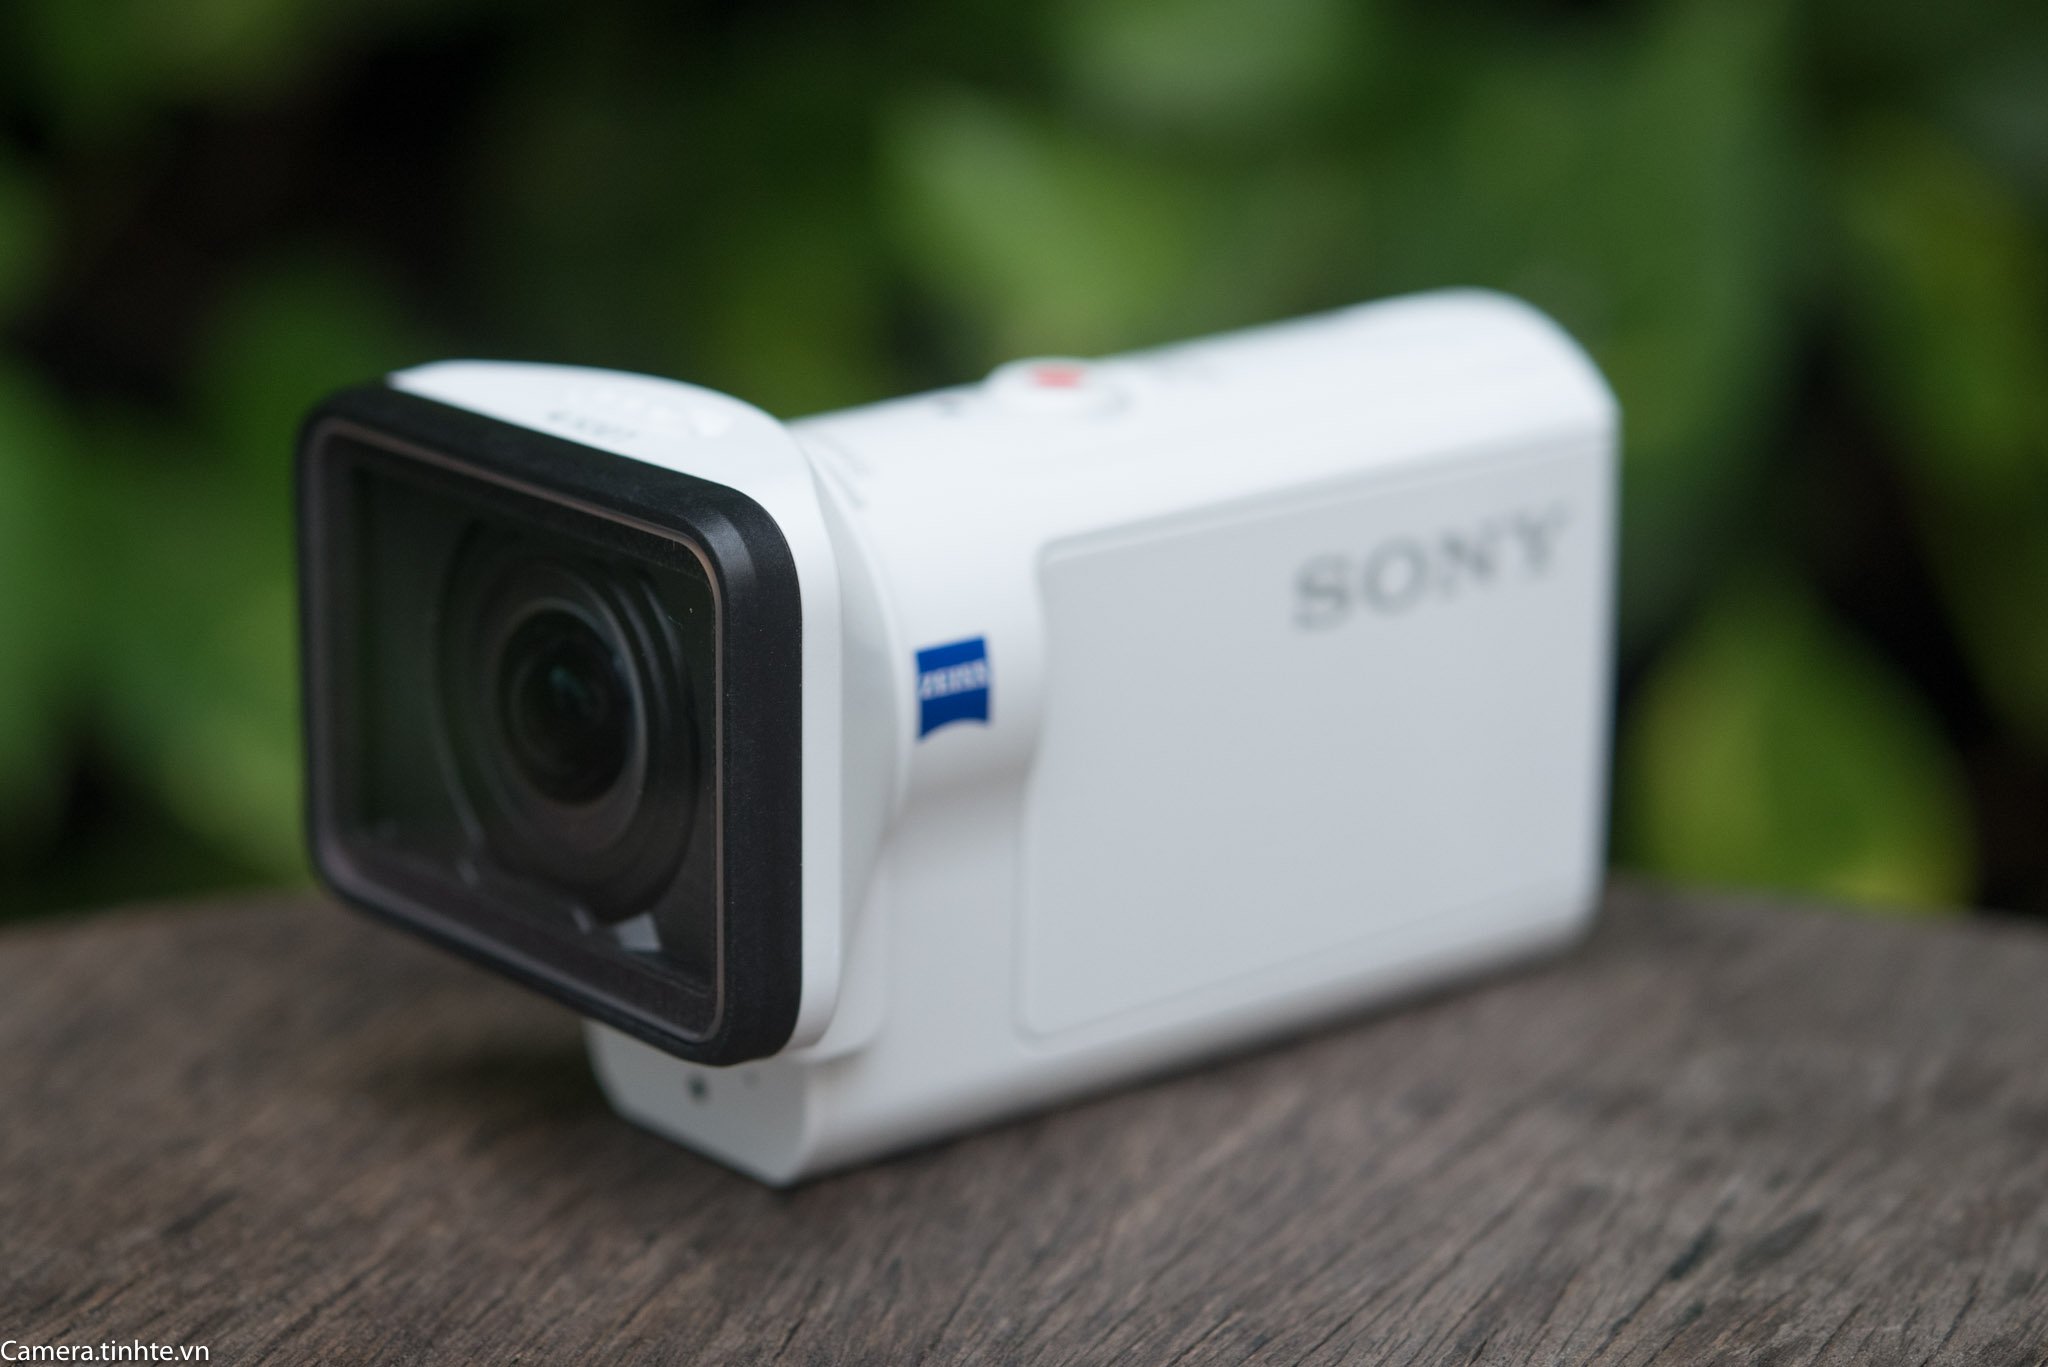 Đang tải Phu kien Sony FDR-X3000 - Camera.tinhte.vn -1.jpg…